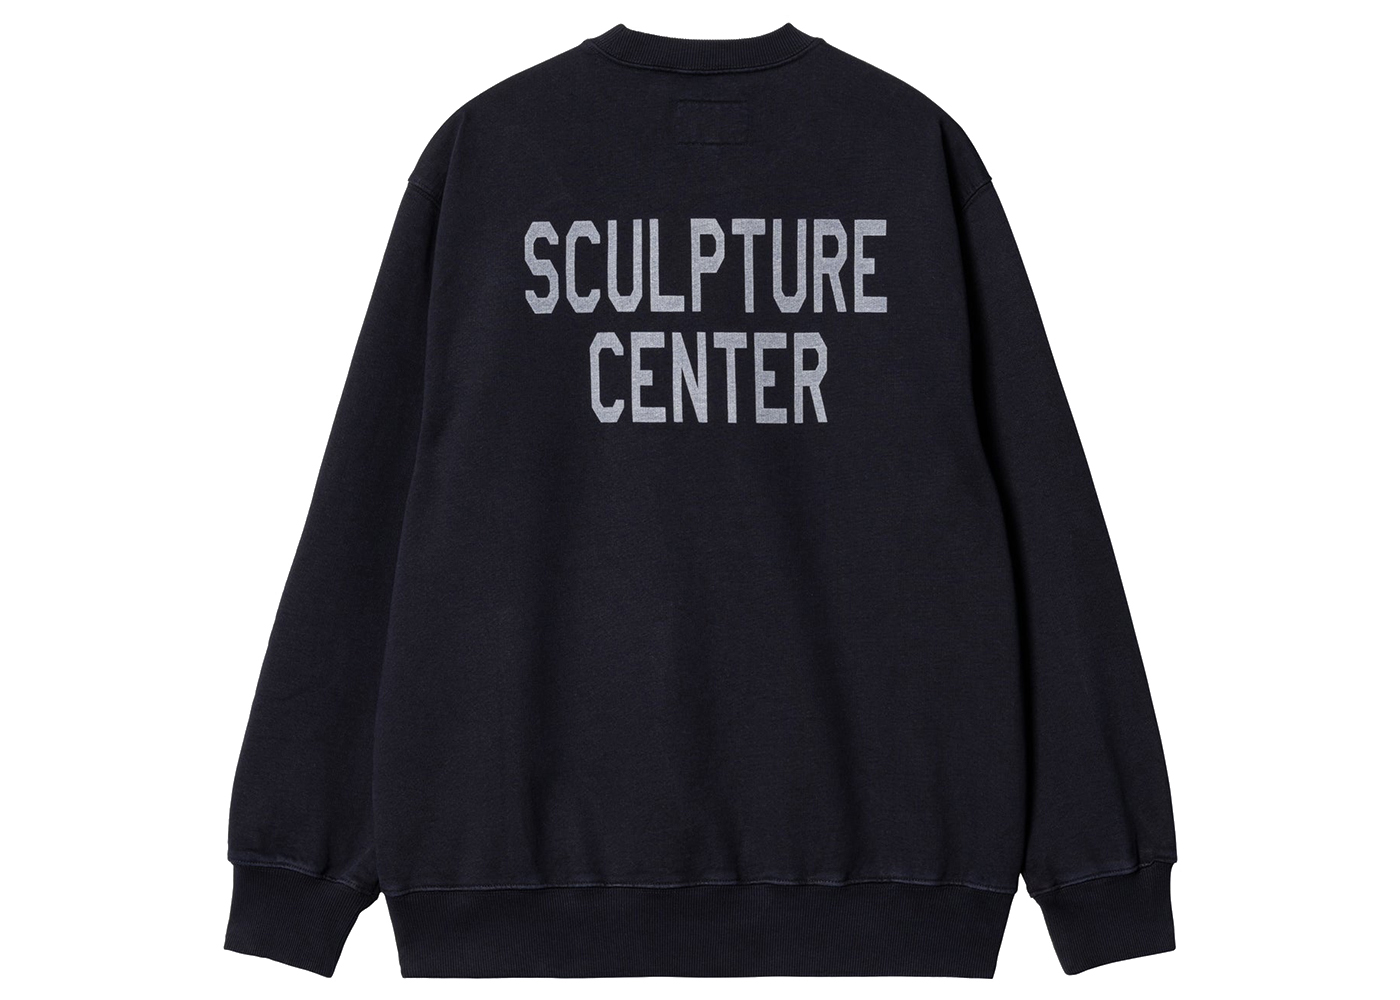 Carhartt WIP x New Balance Sculpture Center Sweatshirt Navy